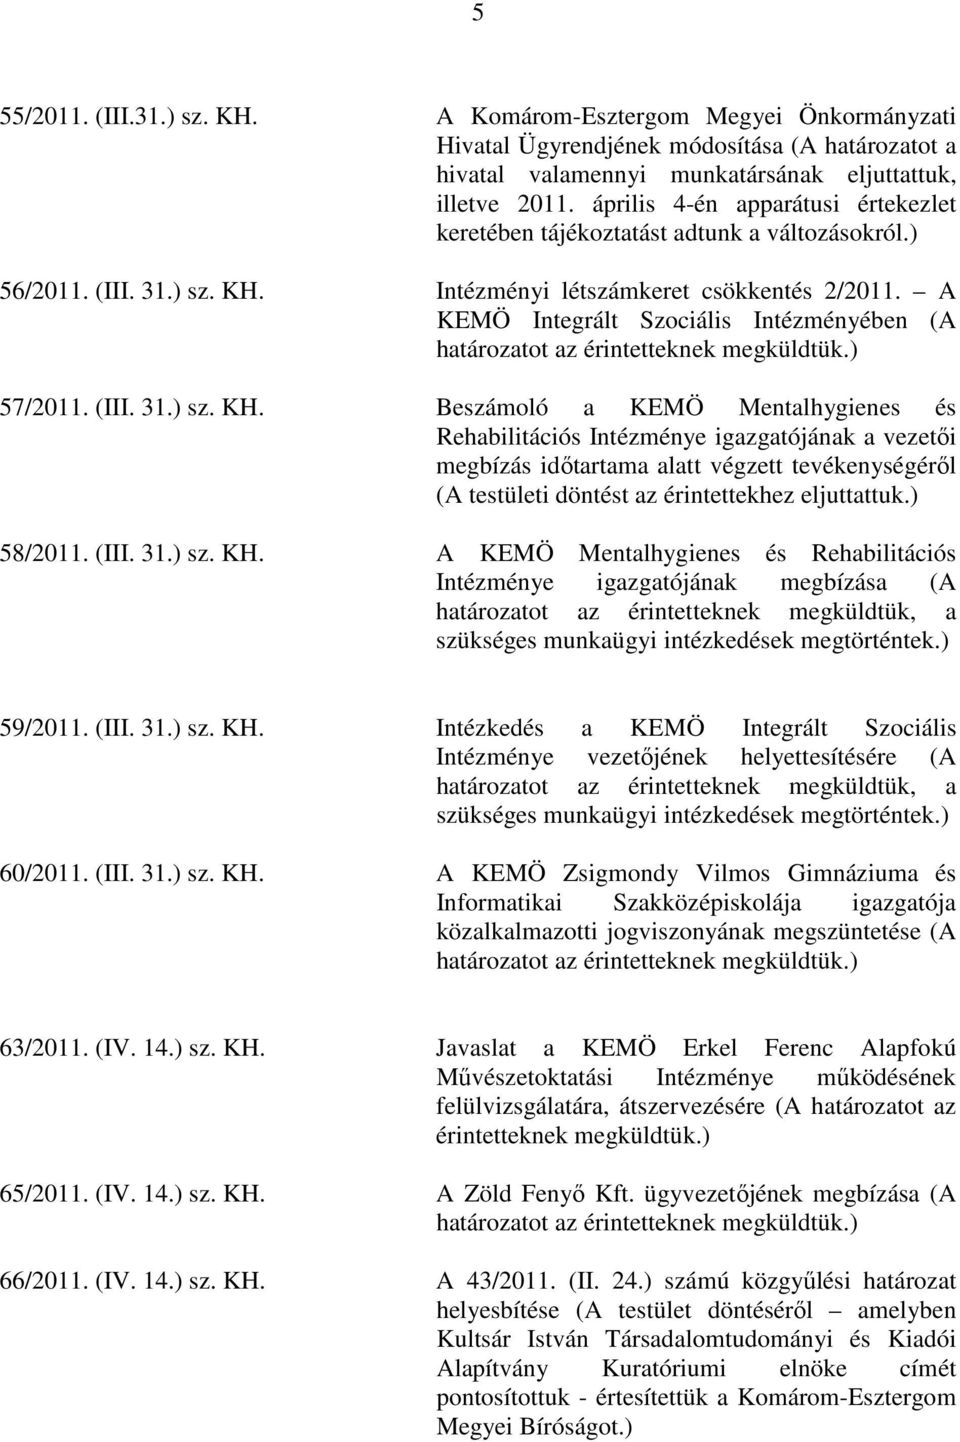 A KEMÖ Integrált Szociális Intézményében (A határozatot az érintetteknek megküldtük.) 57/2011. (III. 31.) sz. KH.